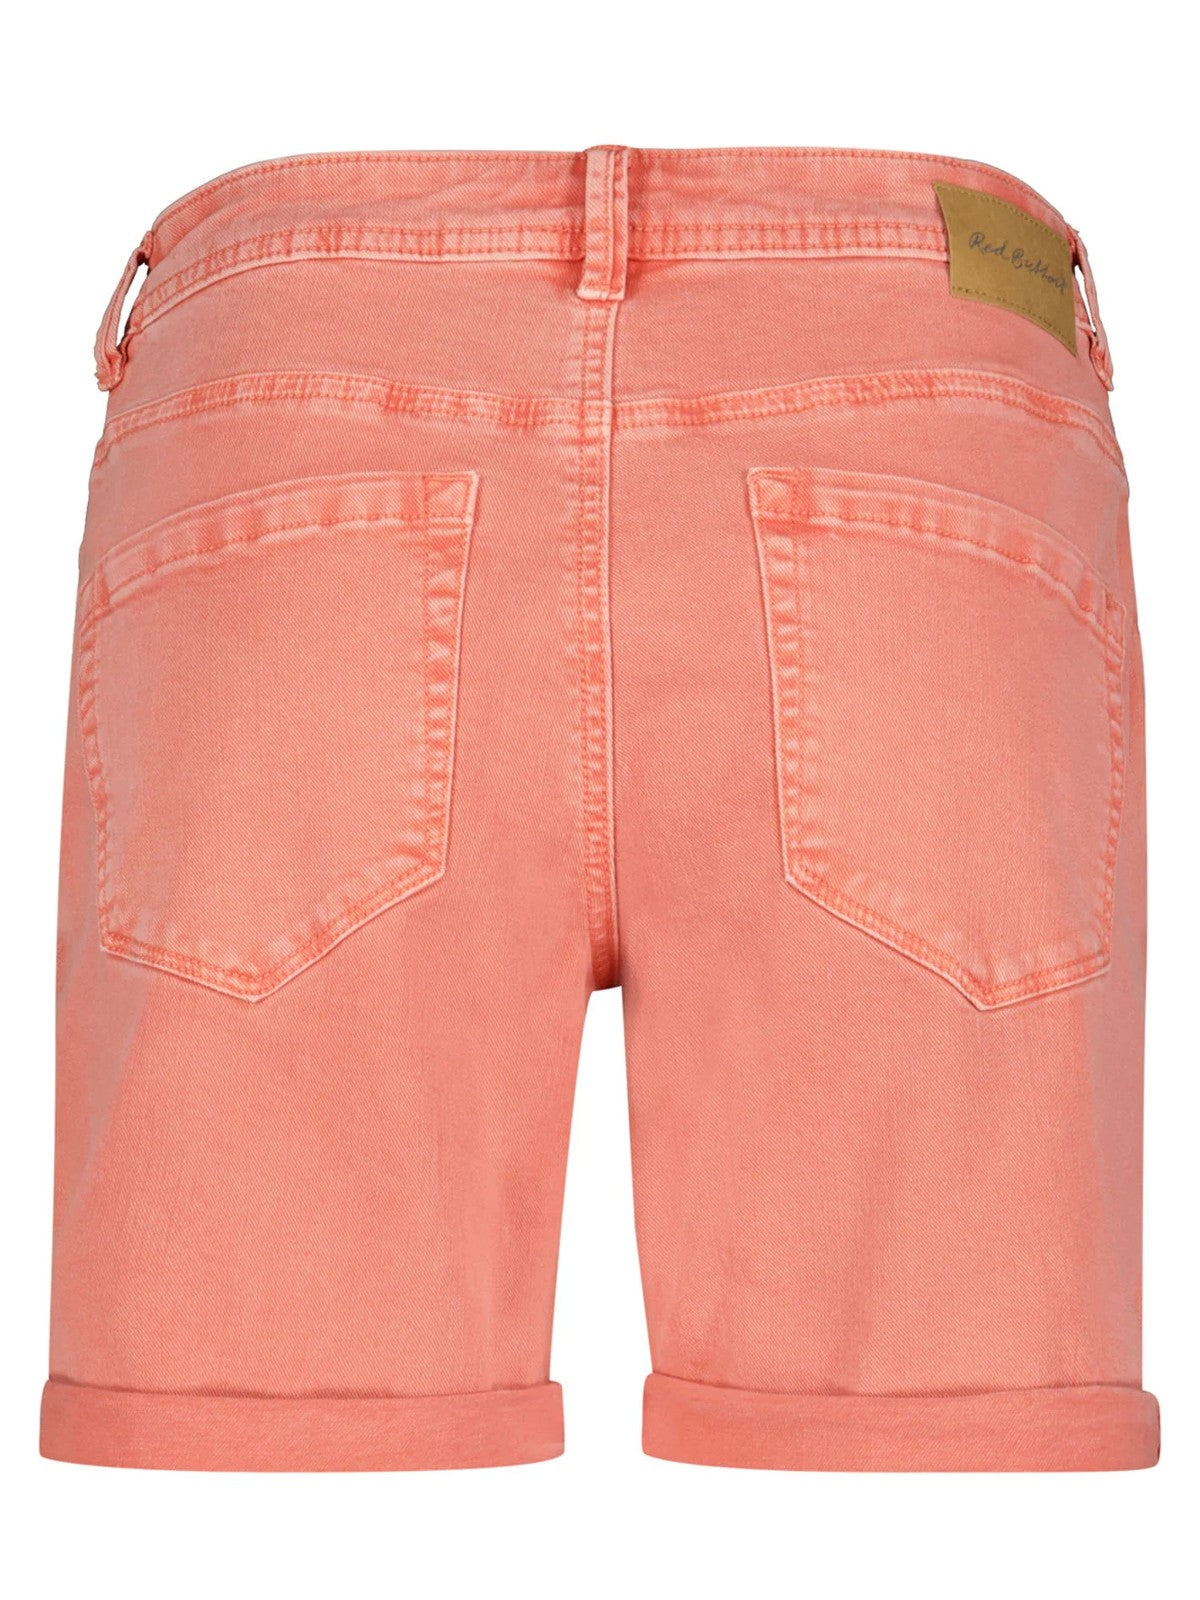 Bibette Coral Shorts